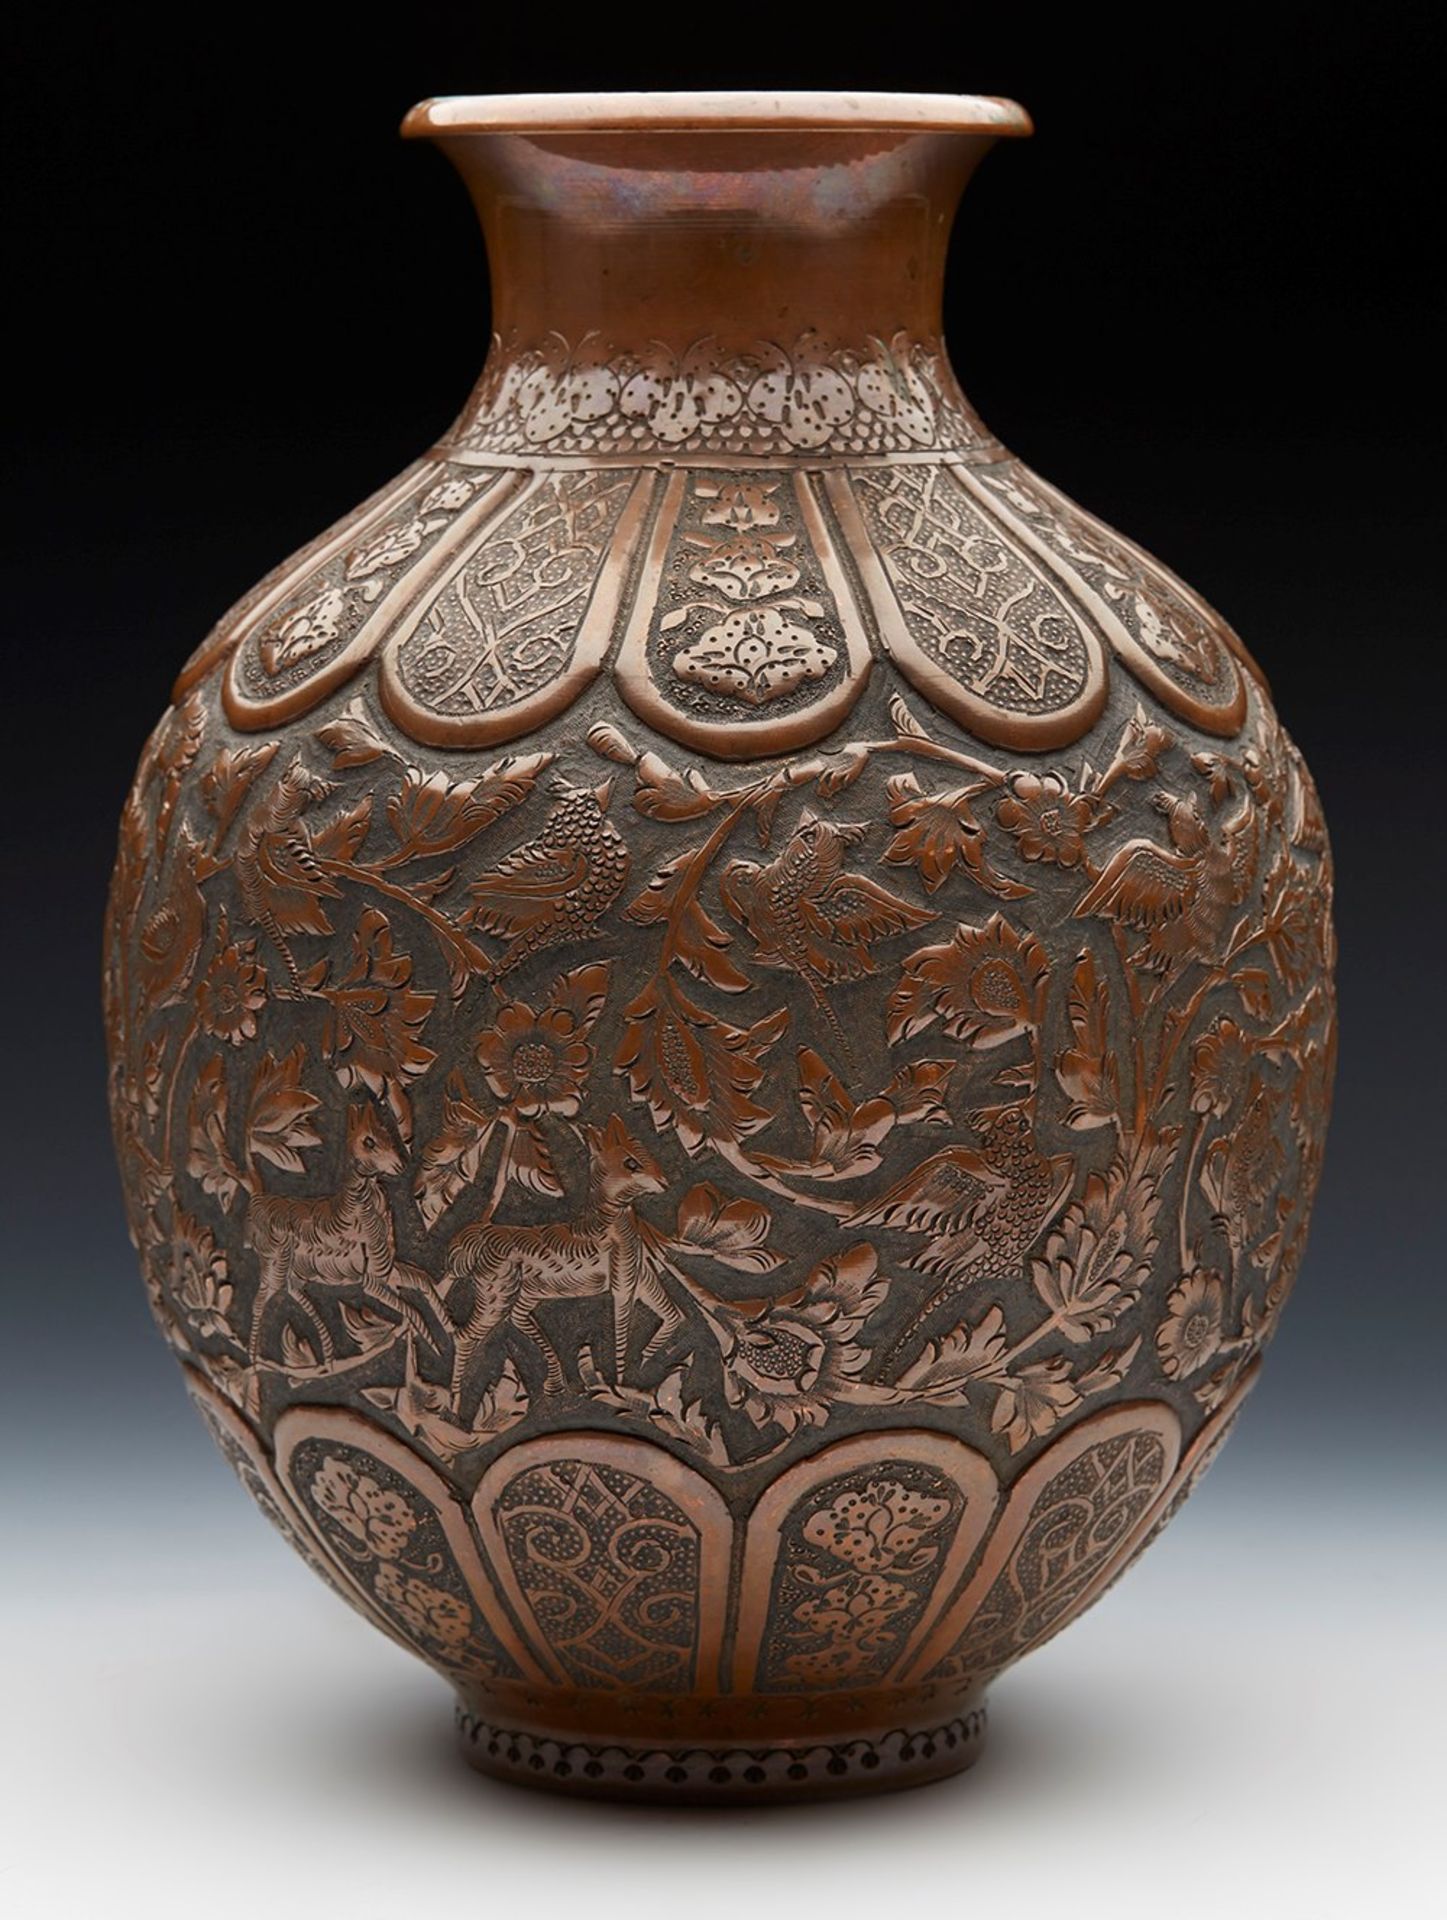 Antique Persian Copper Vase With Birds & Animals 19Th C.